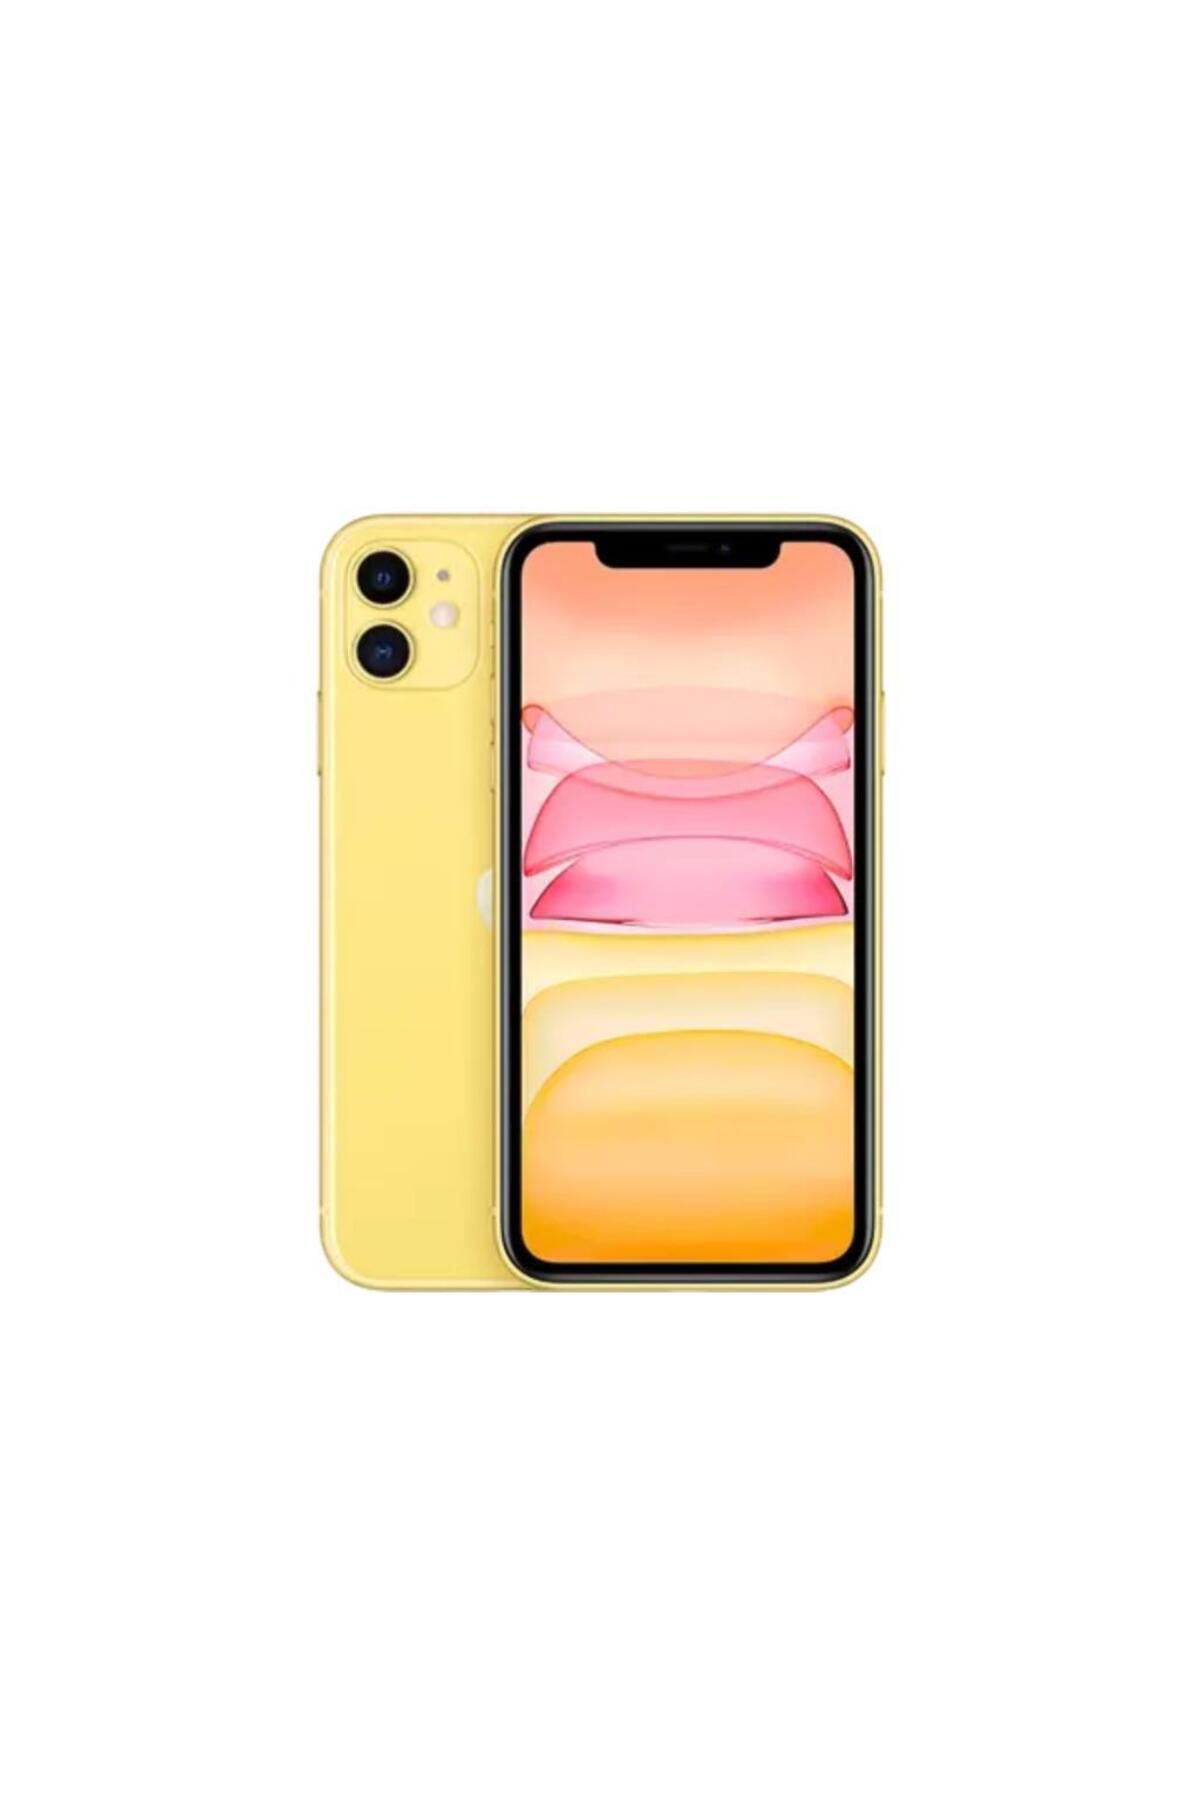 Apple Yenilenmiş Apple iPhone 11 64 GB Sarı Cep Telefonu